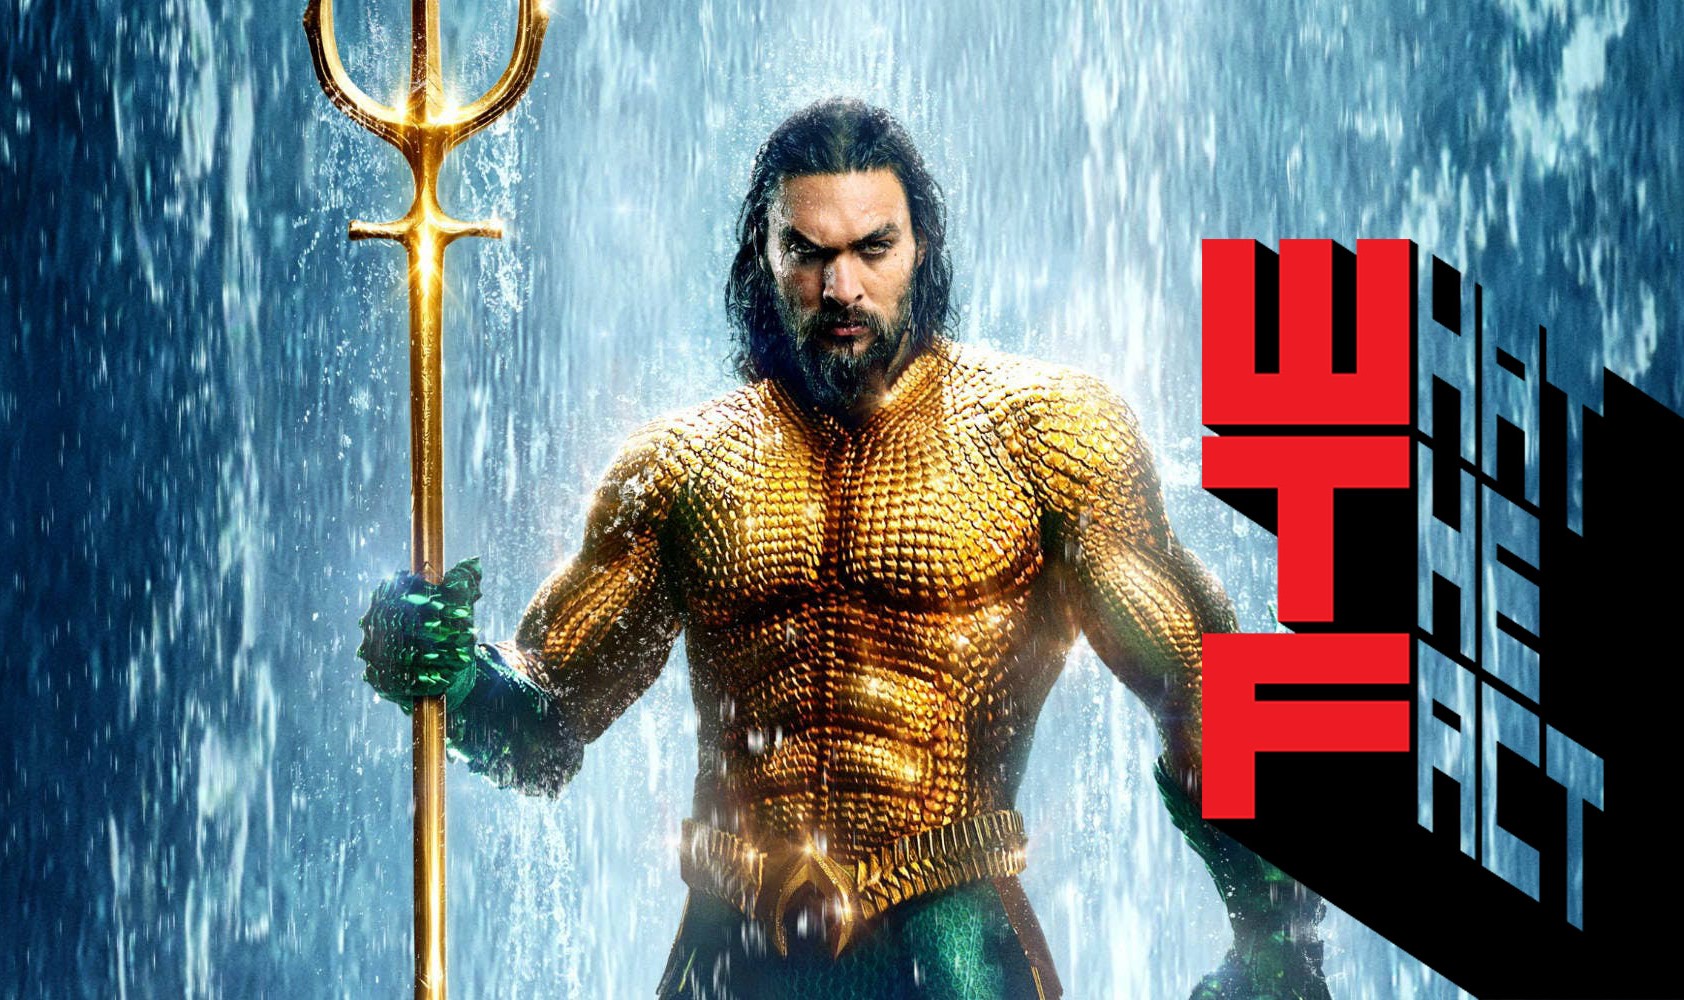 10 อันดับ Box Office (28 – 30 ธ.ค.) : Aquaman ยึดตำแหน่งแชมป์ 2 สัปดาห์ซ้อน ทำไปแล้วกว่า 748 ล้านเหรียญทั่วโลก